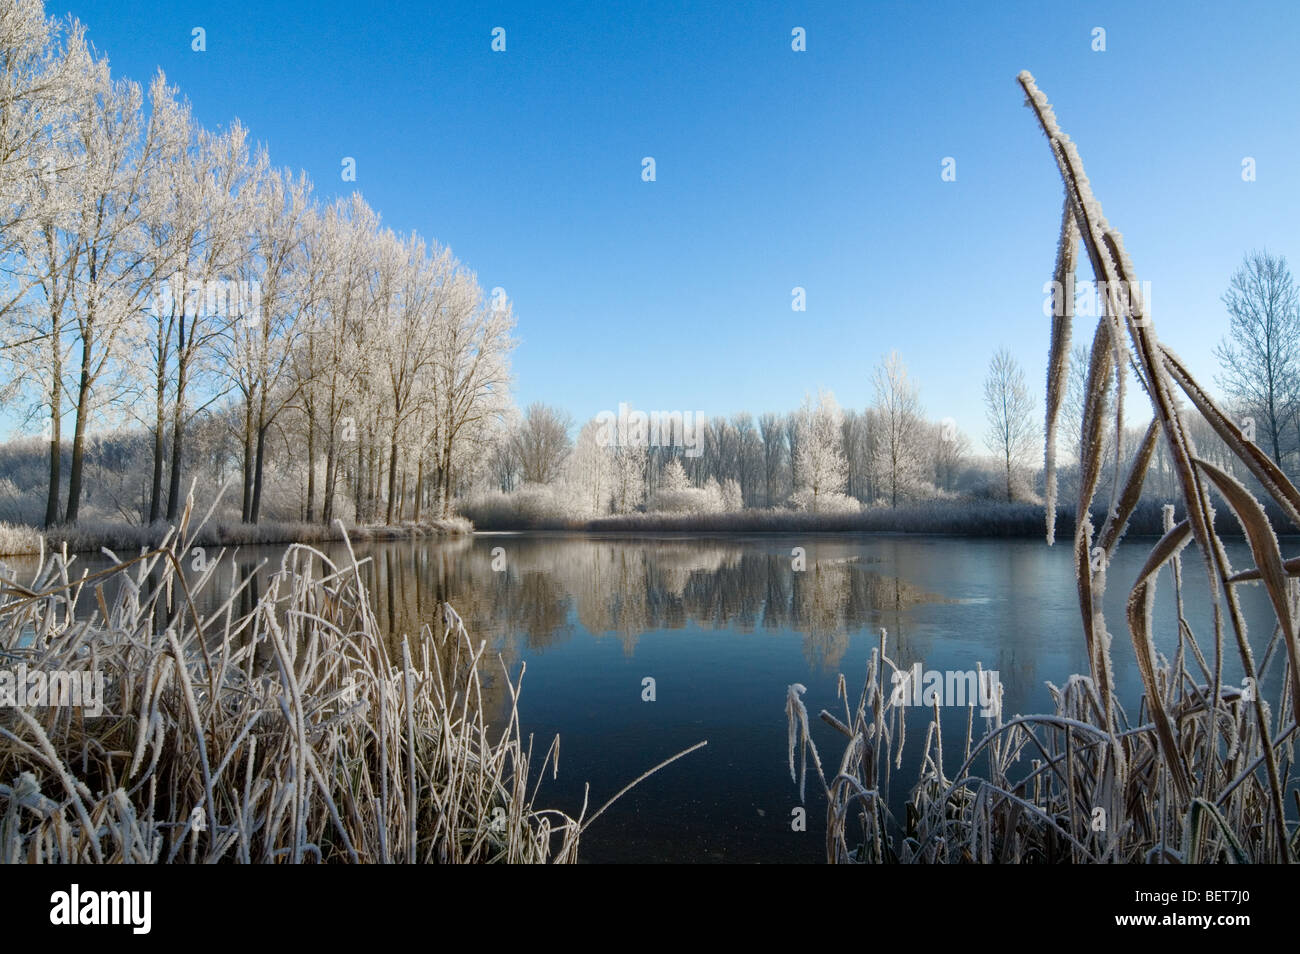 Alberi e reedbed lungo il fiume congelato con ghiaccio nel gelido inverno coperto di brina bianca, Moerbeke, Belgio Foto Stock